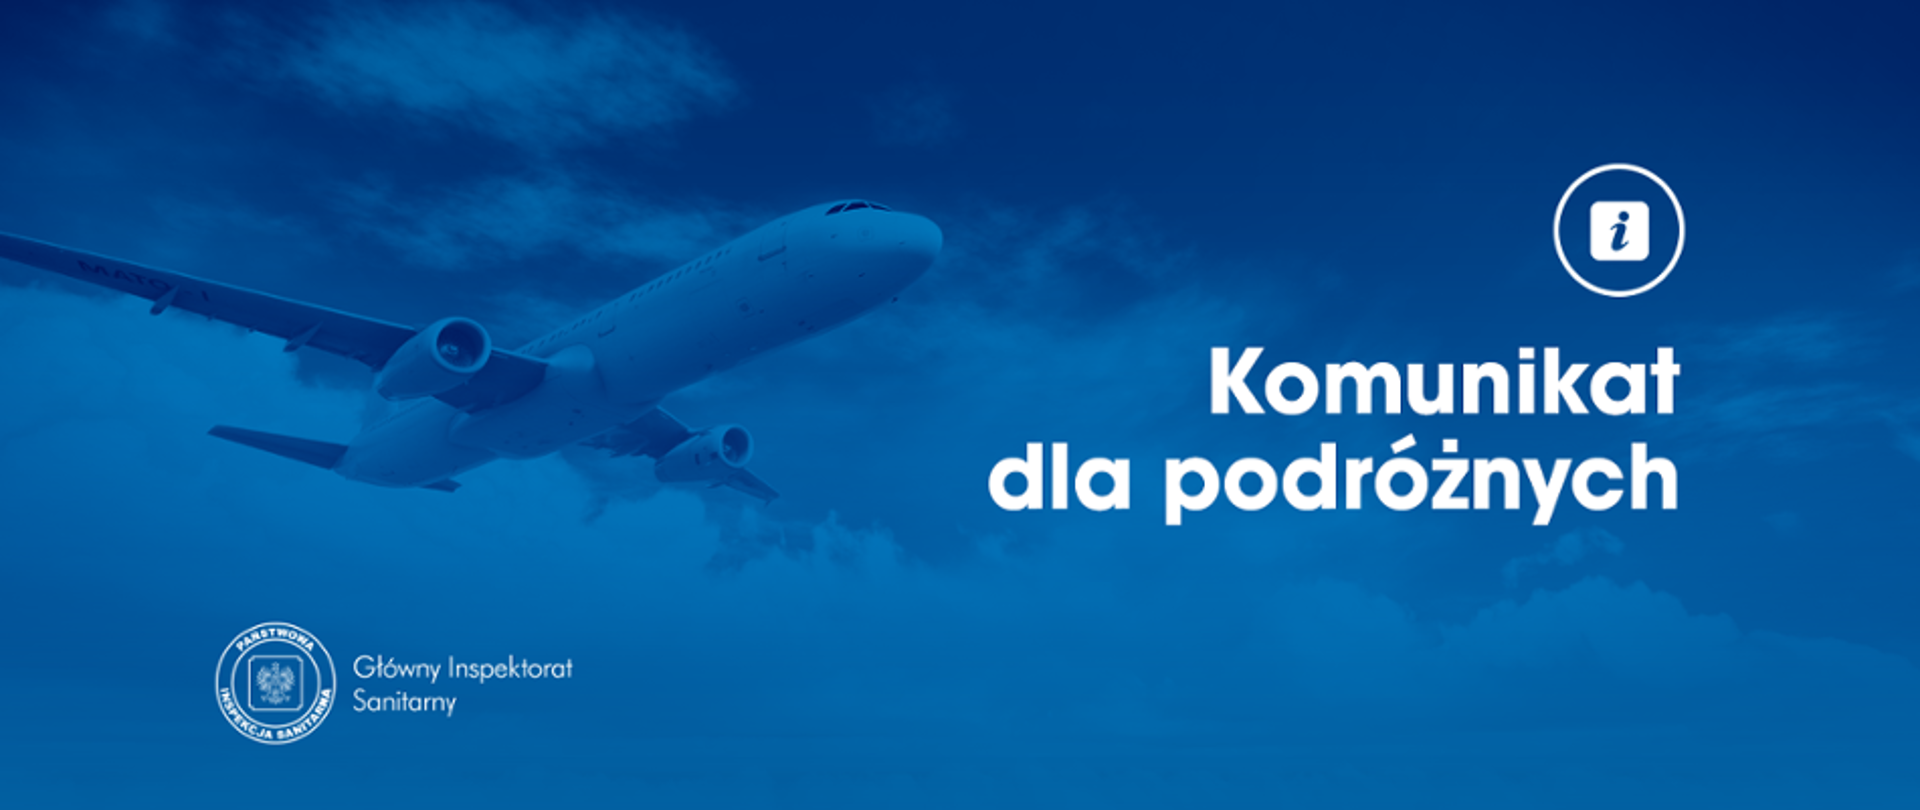 niebieski baner z zdjęciem samolotu i napisem - Komunikat dla podróżnych 